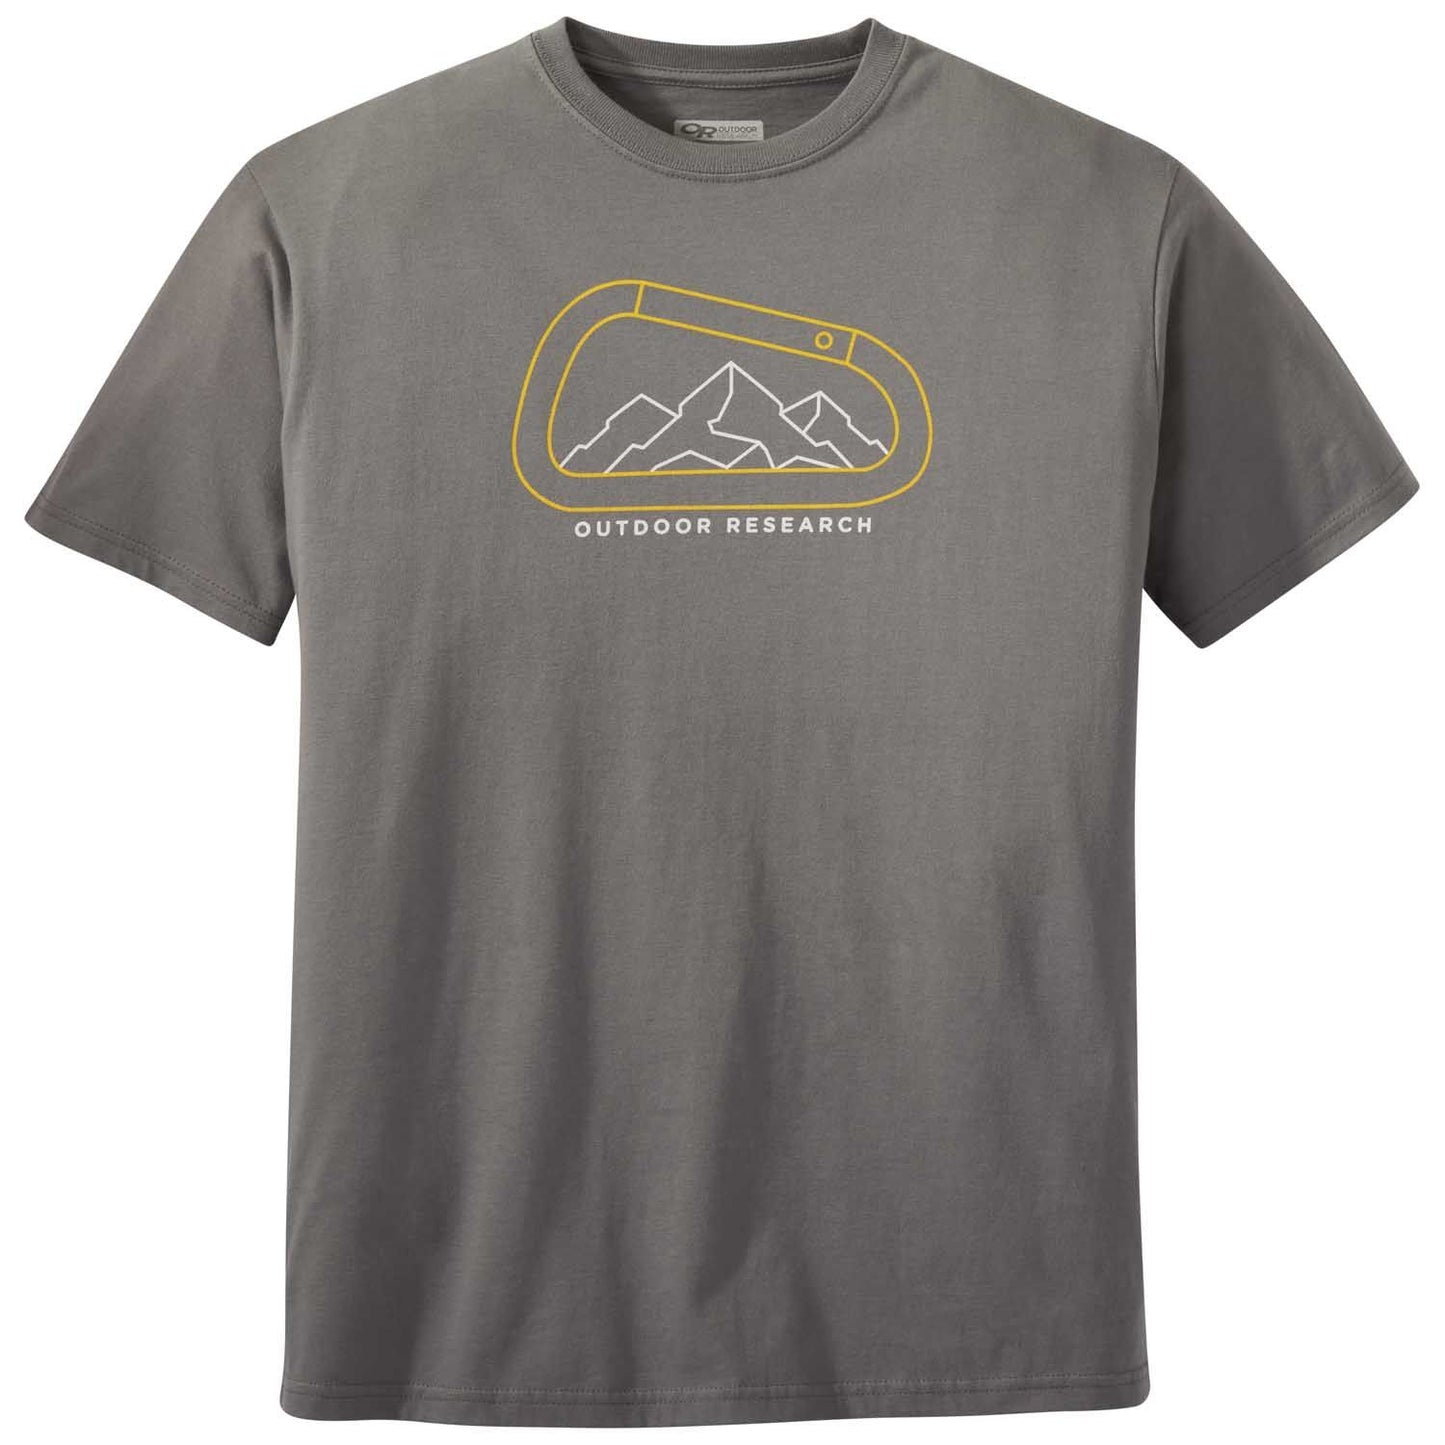 Outdoor Research - Men's Rumney T-Shirt